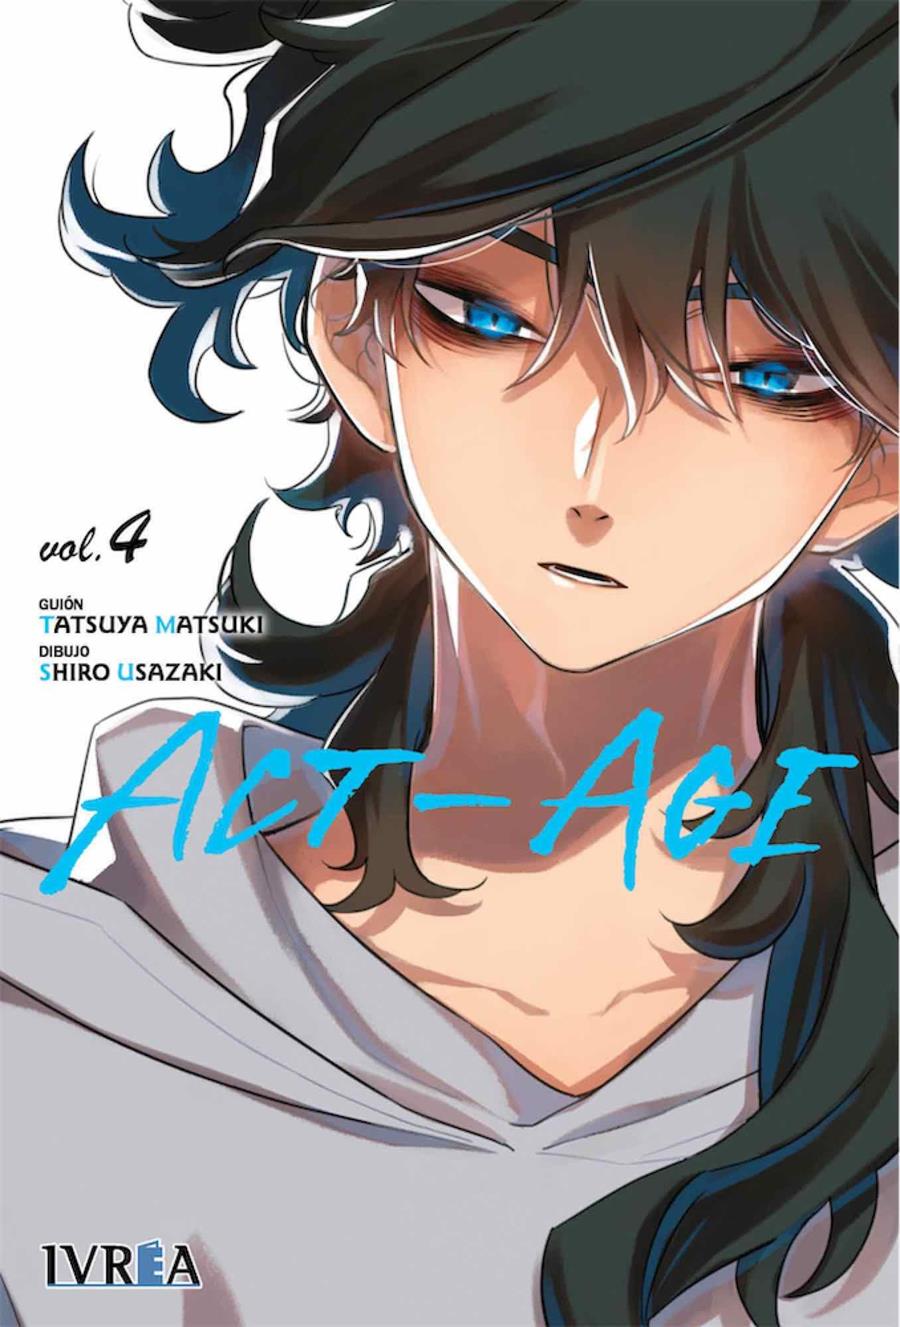 Act-Age 04 | N0620-IVR01 | Tatsuya Matsuki, Shiro Usazaki | Terra de Còmic - Tu tienda de cómics online especializada en cómics, manga y merchandising